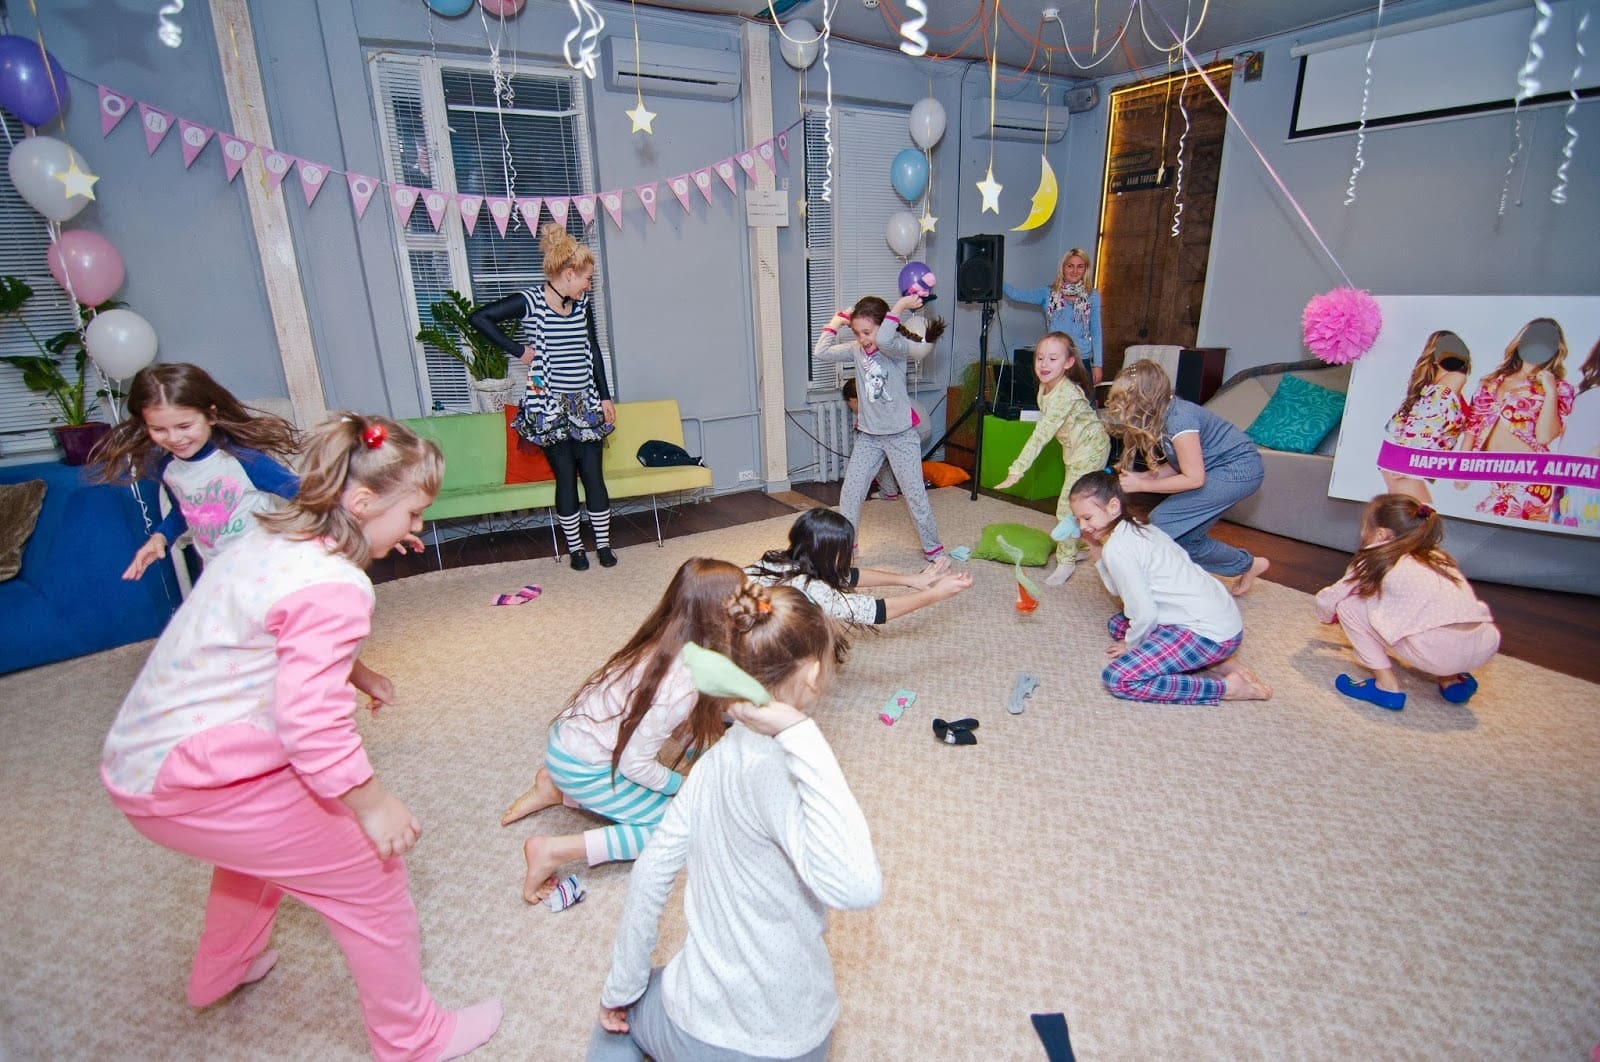 Пижамная вечеринка для девочек - веселый сценарий с играми и конкурсами